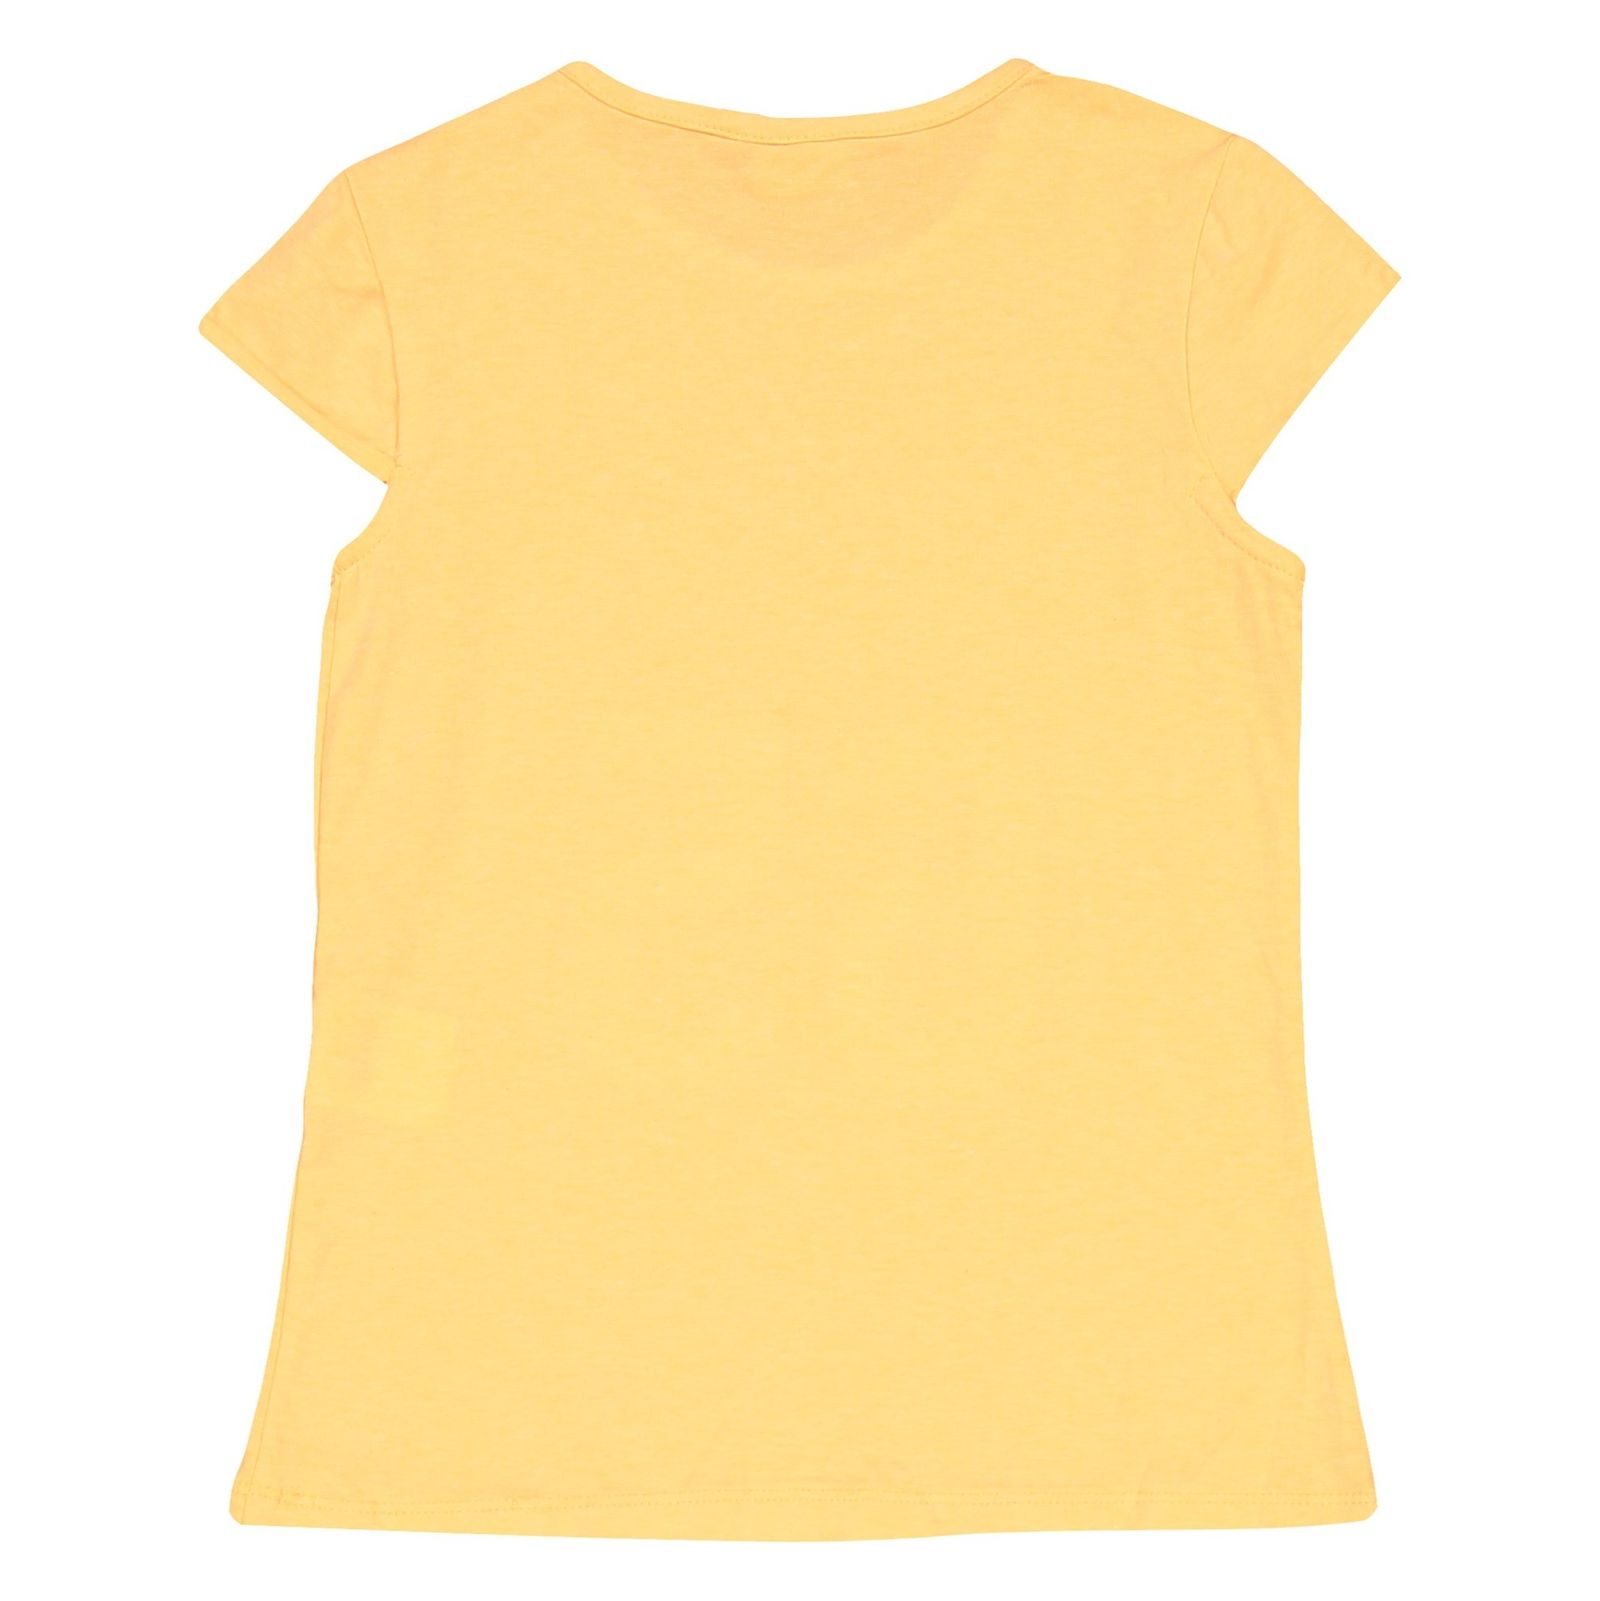 تی شرت و شلوارک دخترانه - بلوکیدز - نارنجي/طوسي - 4